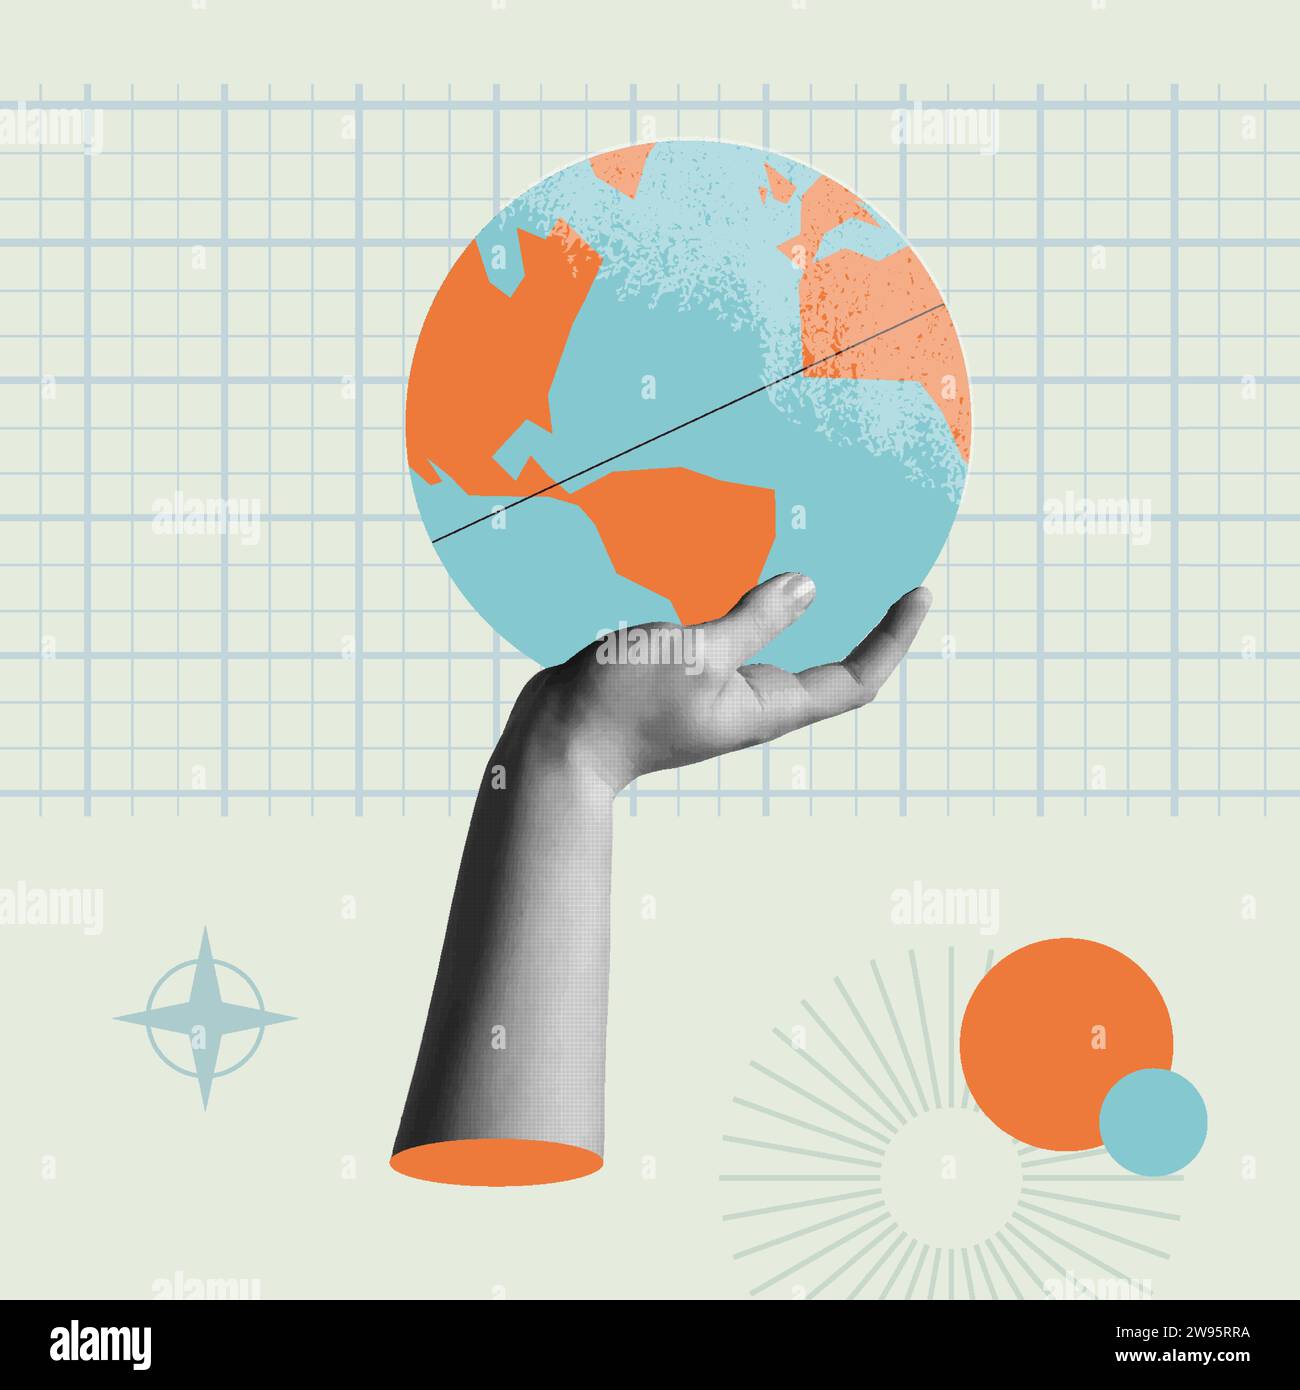 Die Welt in unseren Händen Konzept Karte Vektor Illustration. Menschliche Hand hält eine Cartoon-Erdkugel in trendigem Rastone-Retro-Collage Mixed-Media-Stall der 90er Jahre Stock Vektor